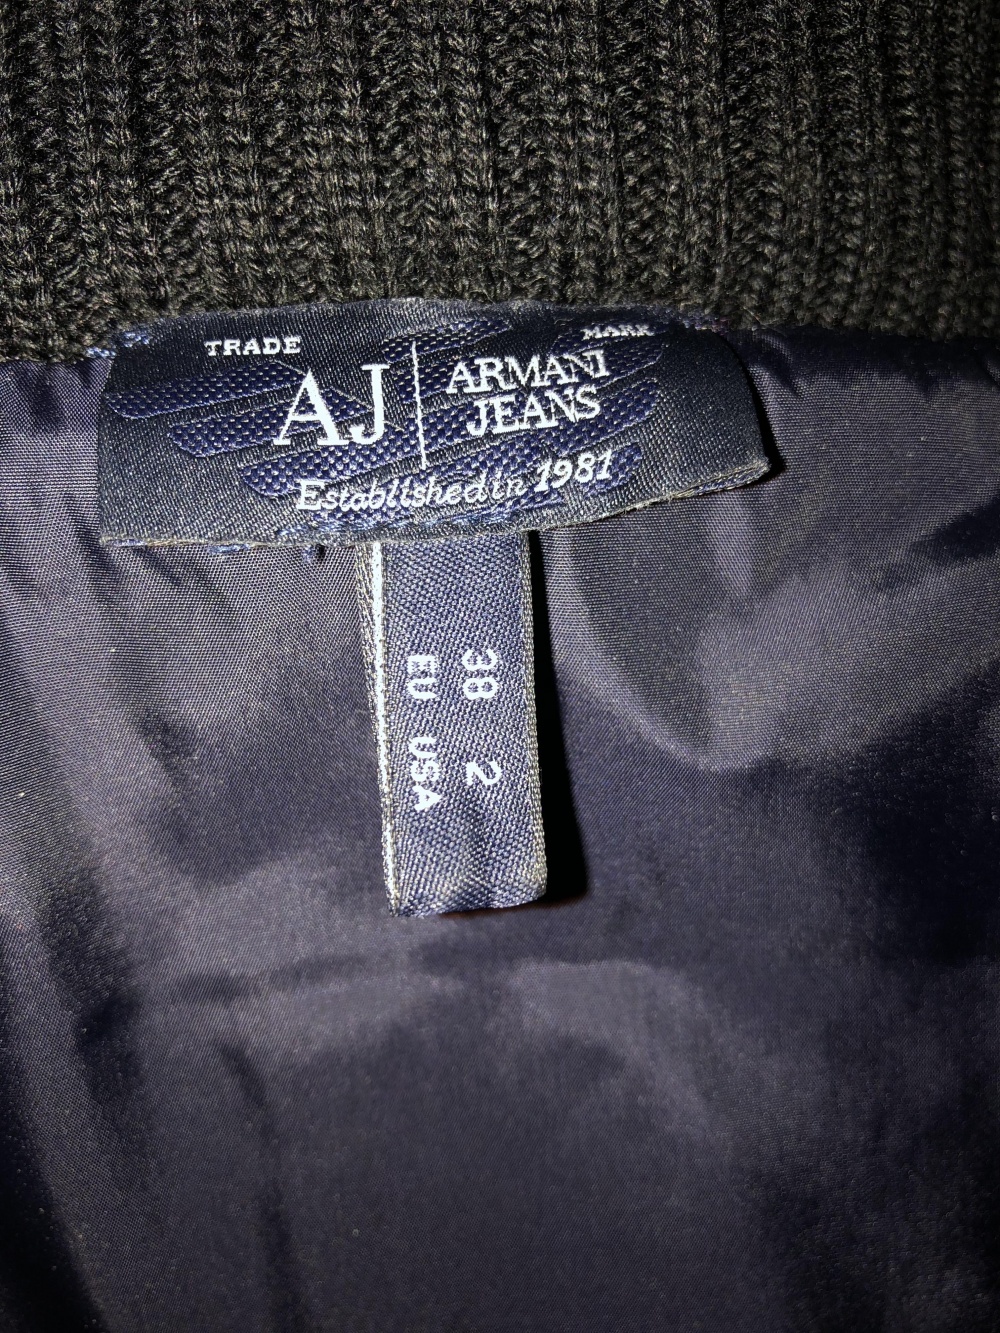 Двусторонняя куртка Armani Jeans, р. 38 (итальянский)